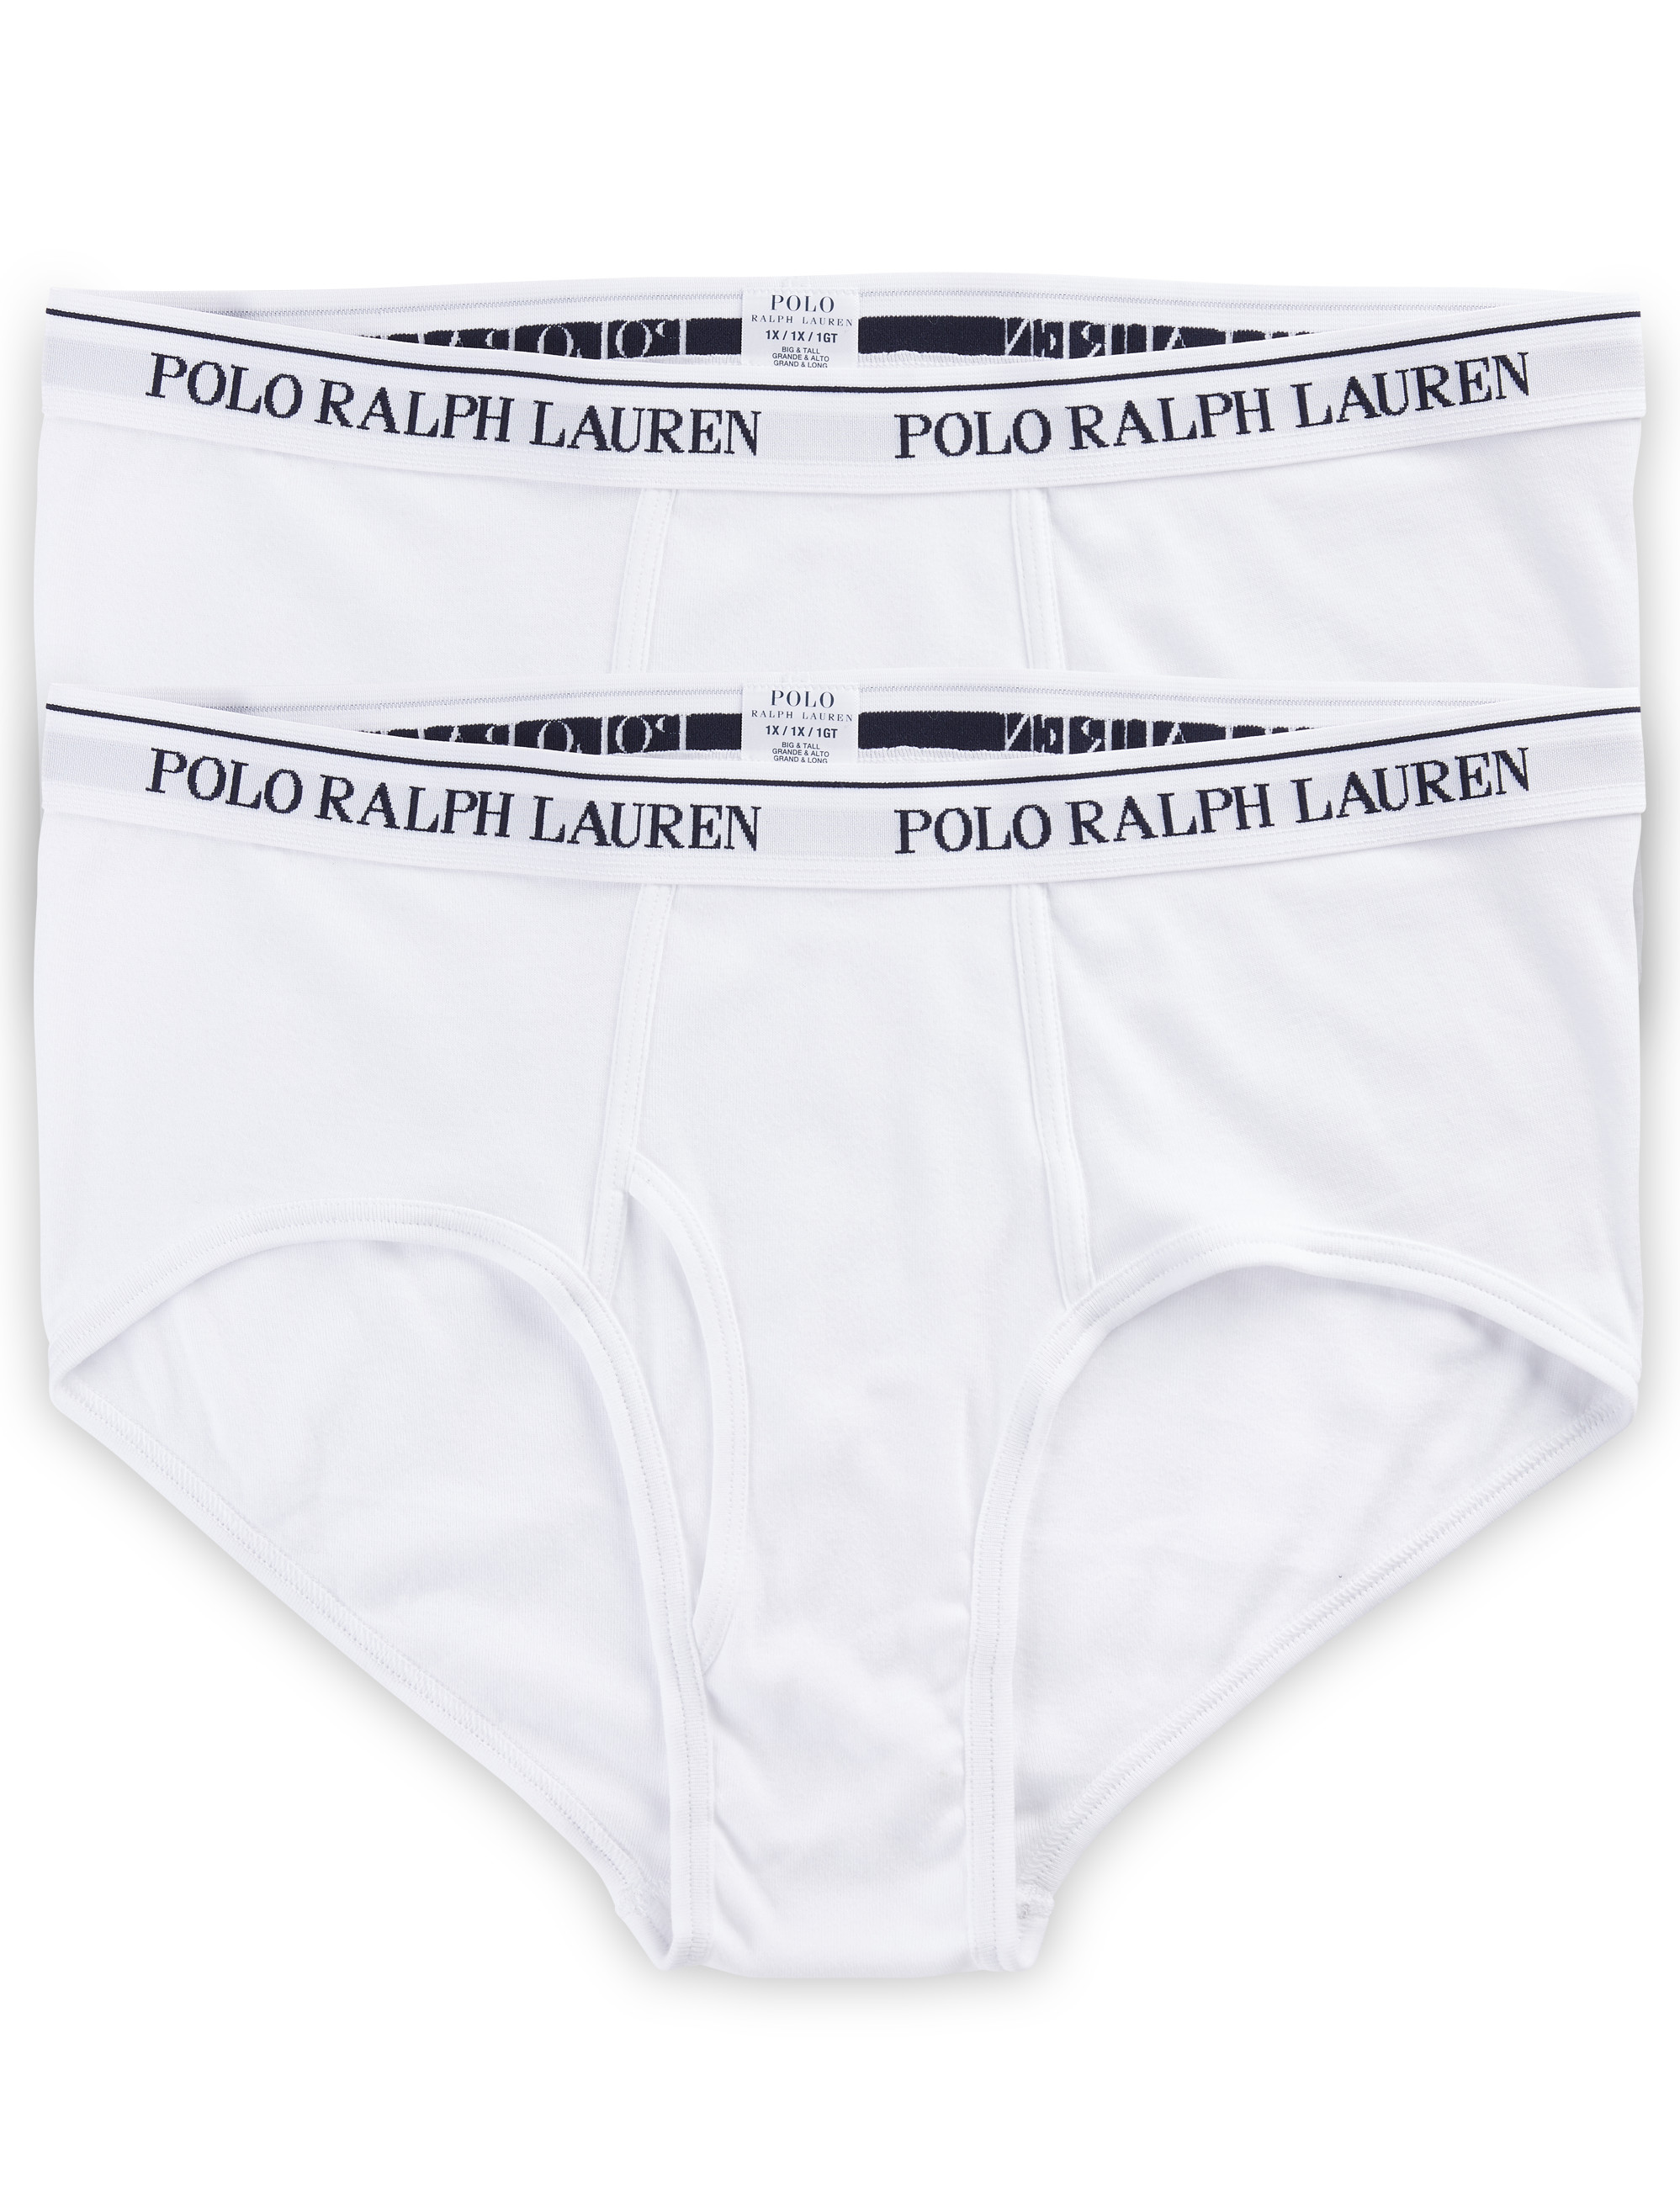 polo ralph lauren underwear